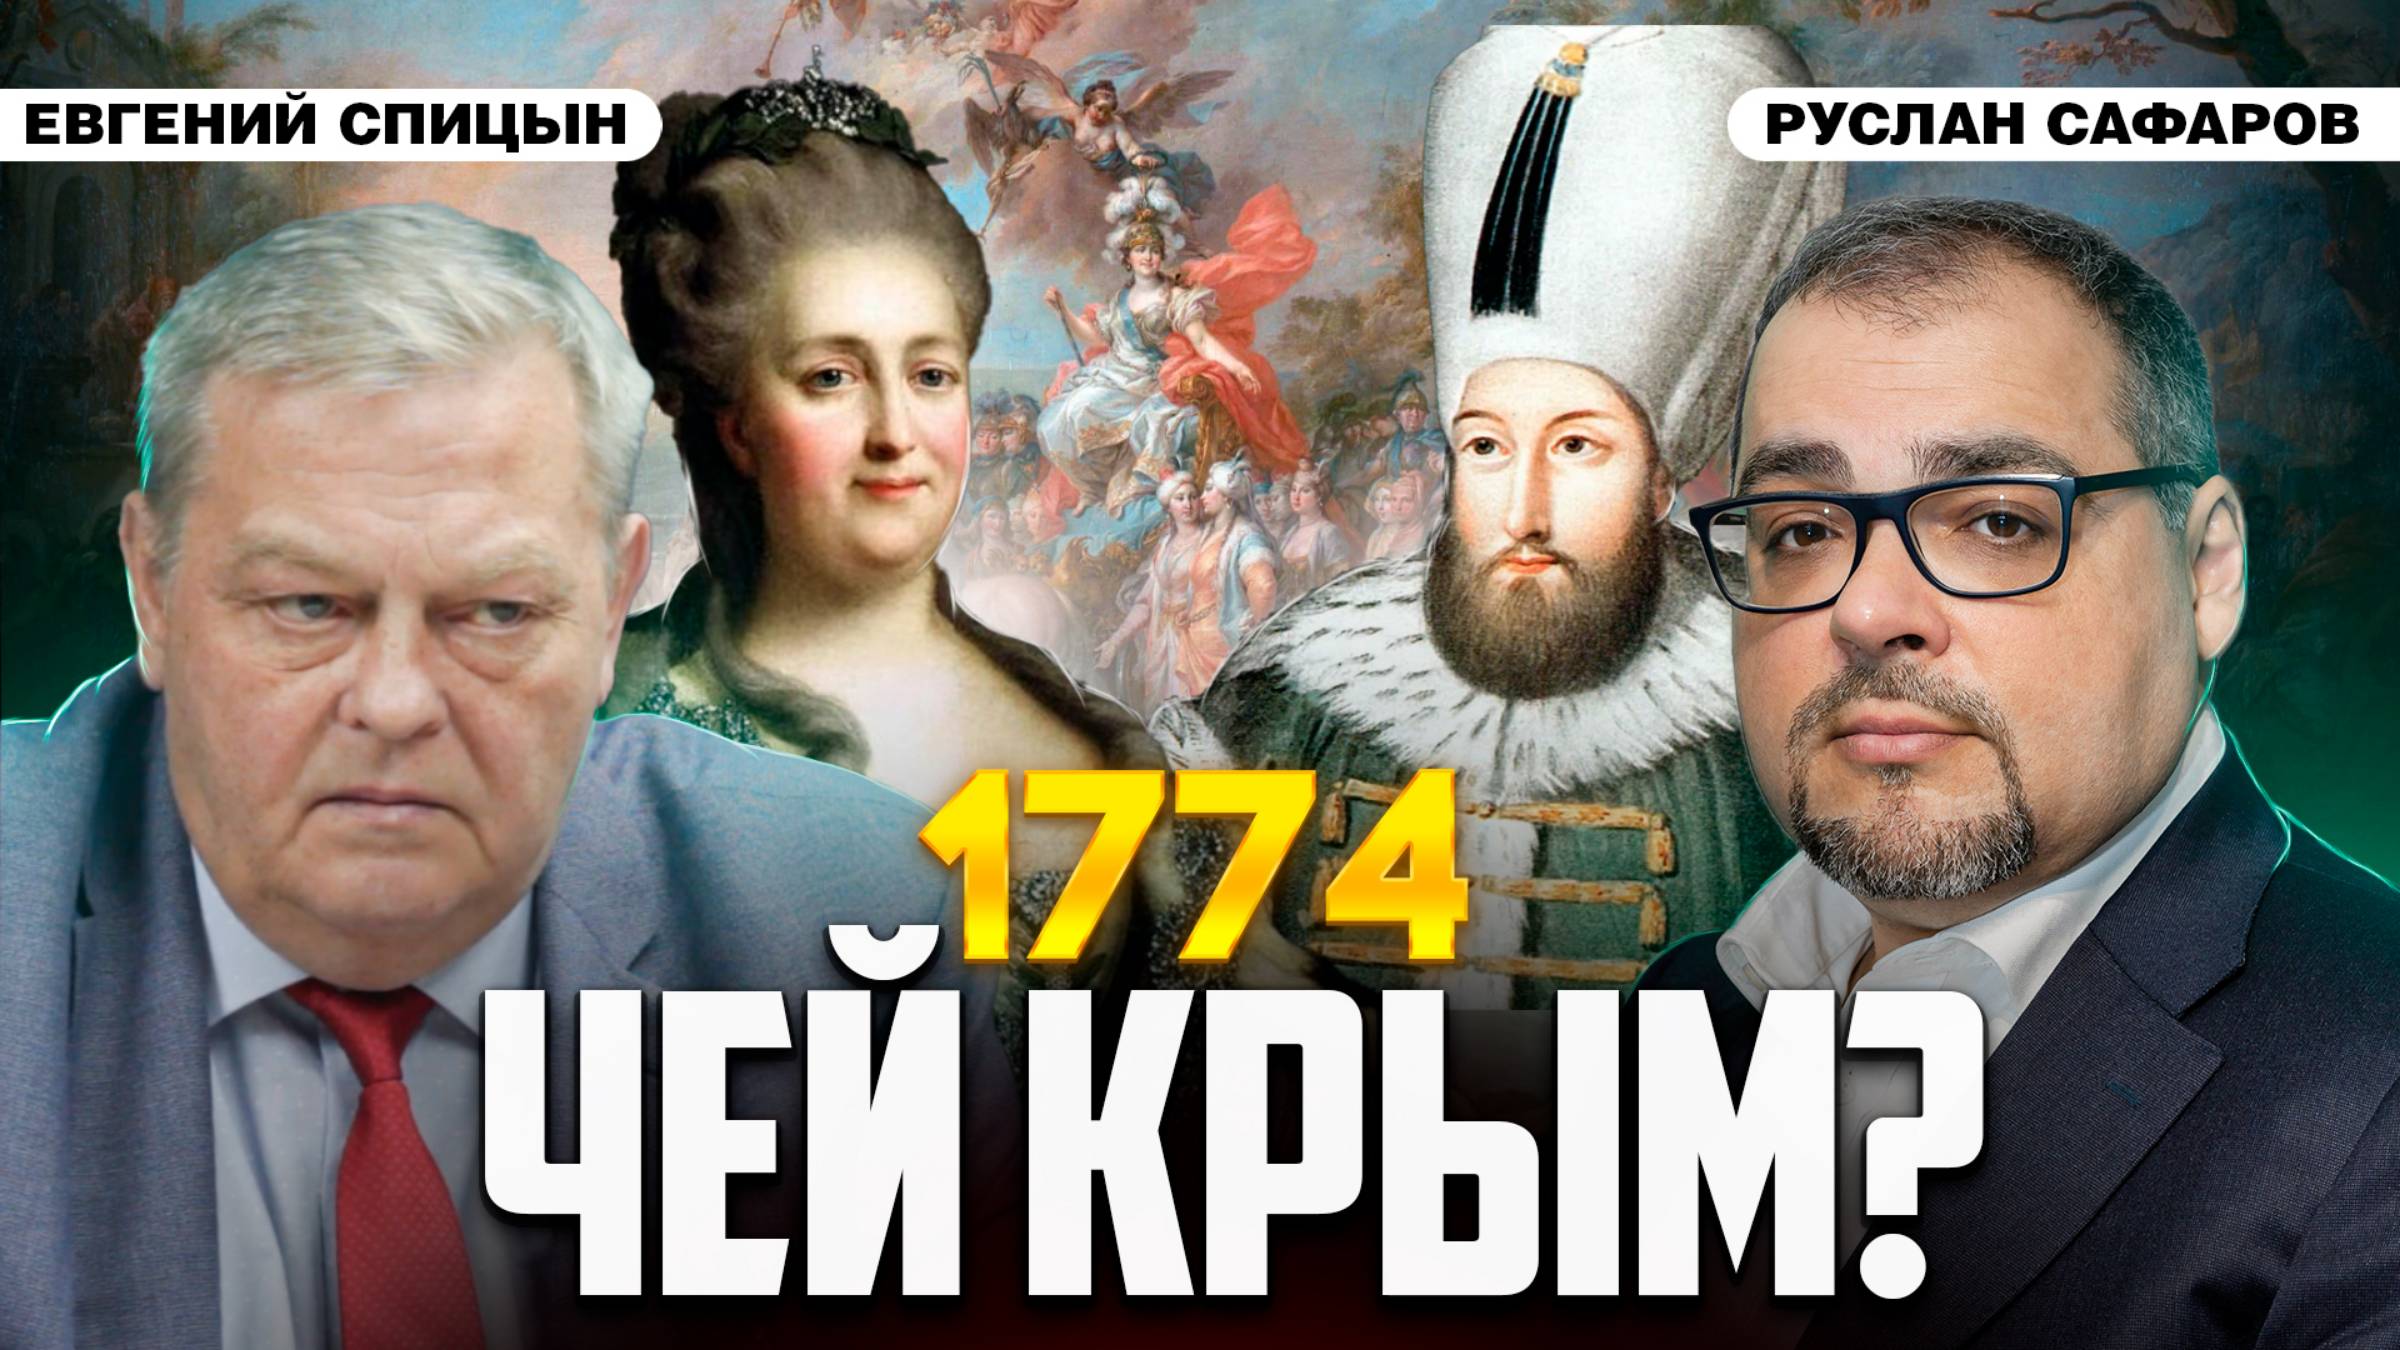 Россия в Северном Причерноморье: почему Запад боится повторения? | Евгений Спицын и Руслан Сафаров